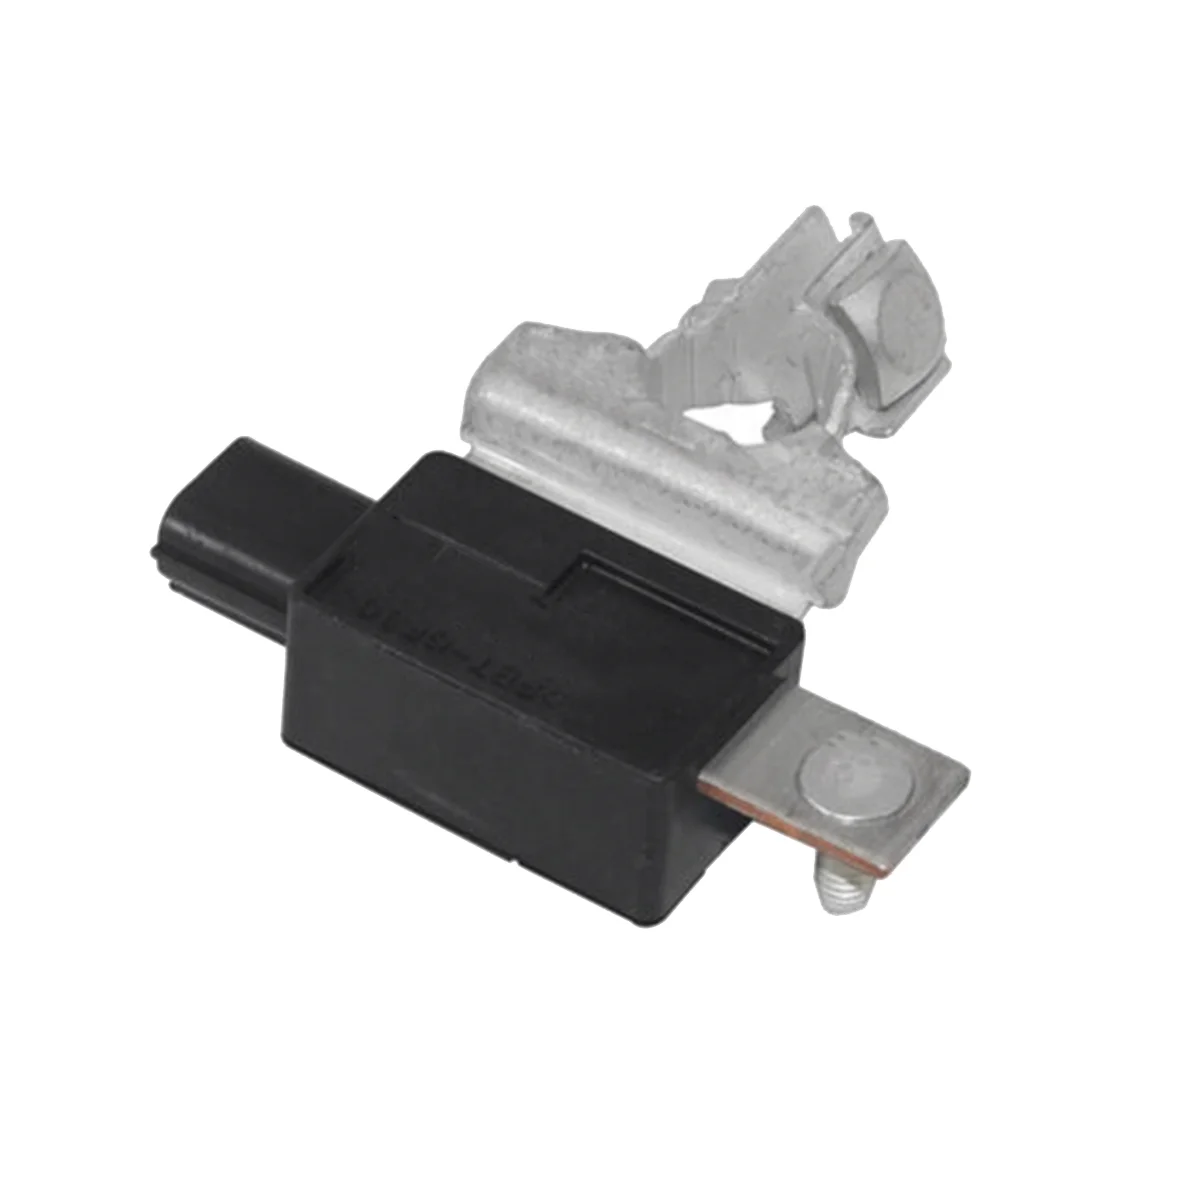 

38920-T5A-A01 Car Battery Sensor Parts for Honda HRV 1.8L Fit 1.5L 2015-2018 Battery Current Sensors 38920-T5A-A02